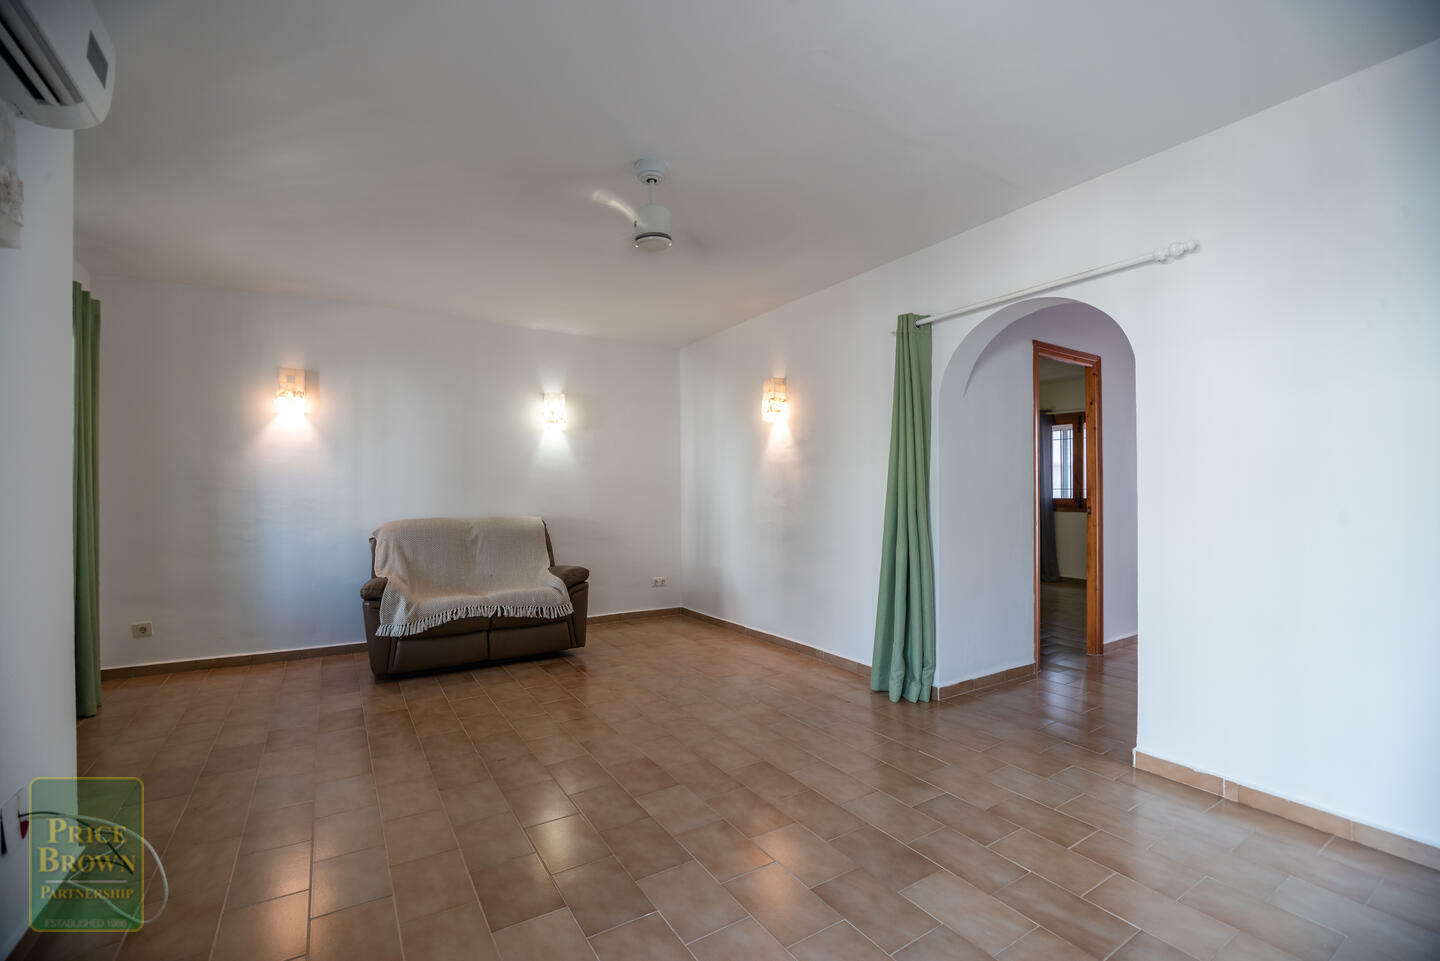 A1428: 2 Bedroom Apartment for Sale in Mojcar, Almería ...